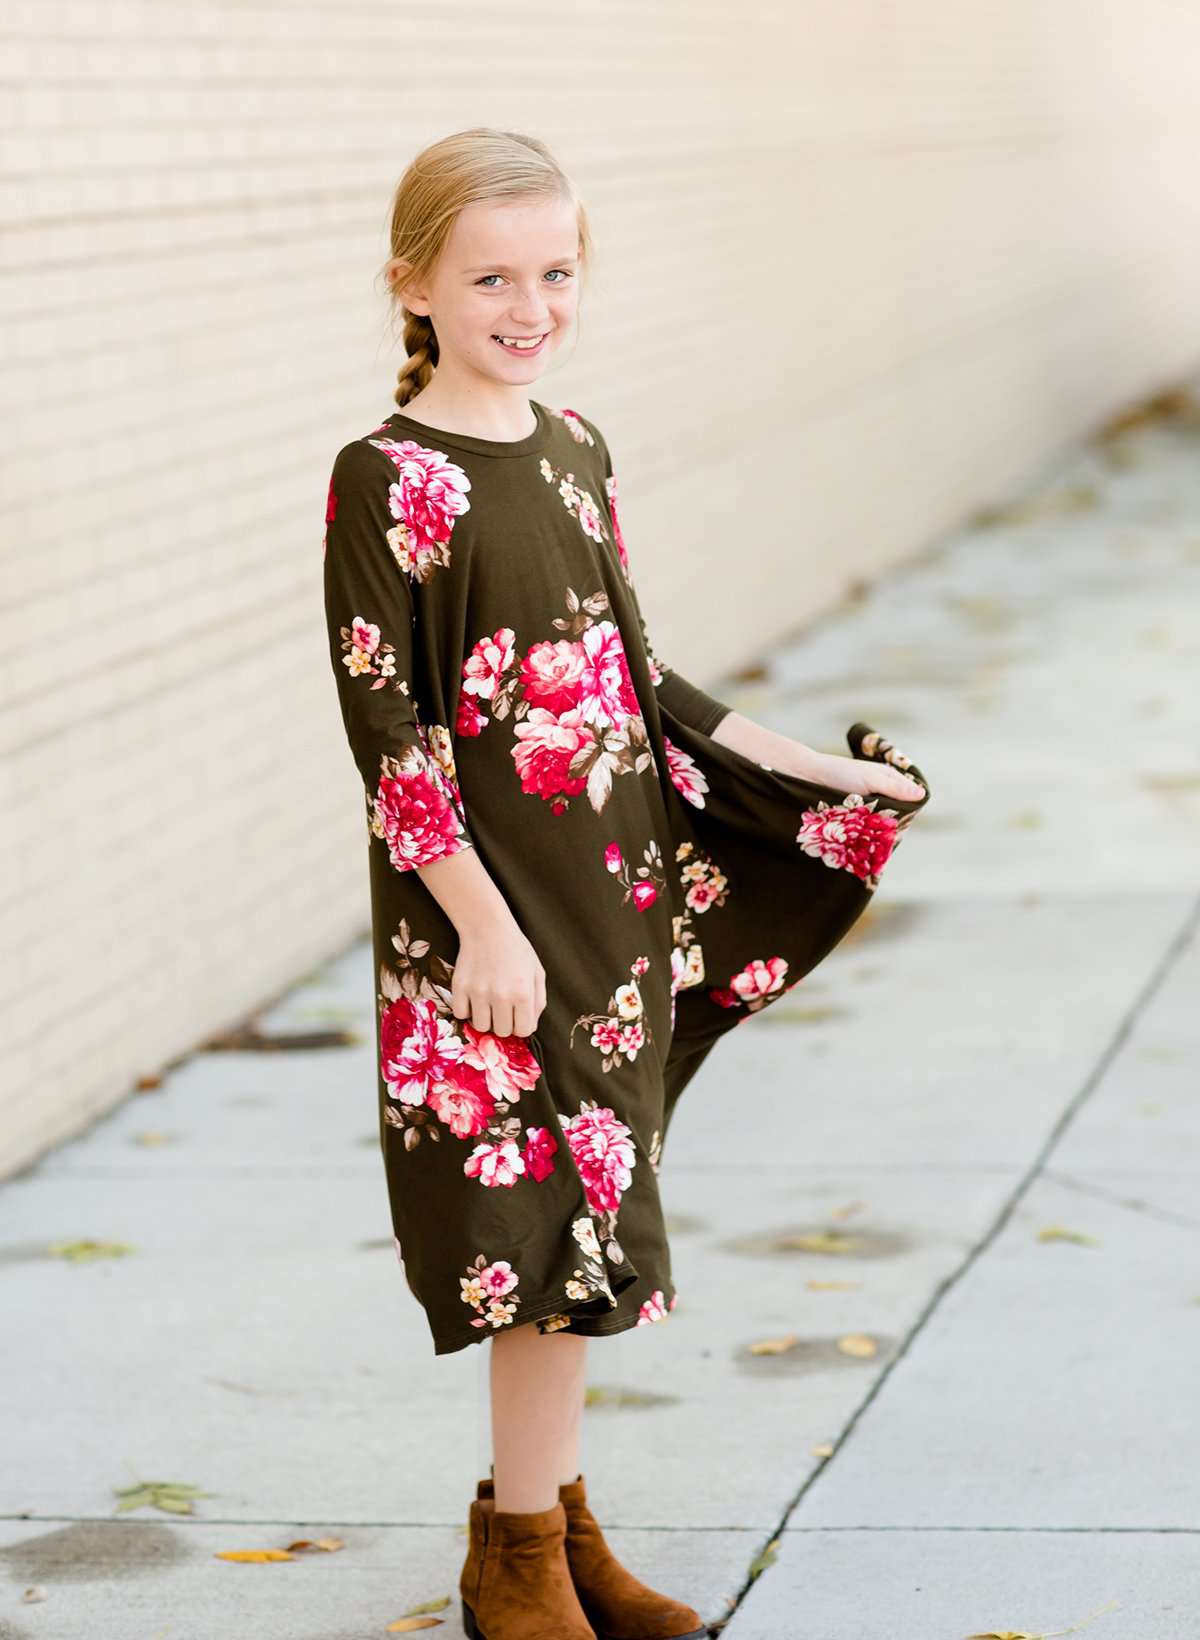 modest dresses for teens